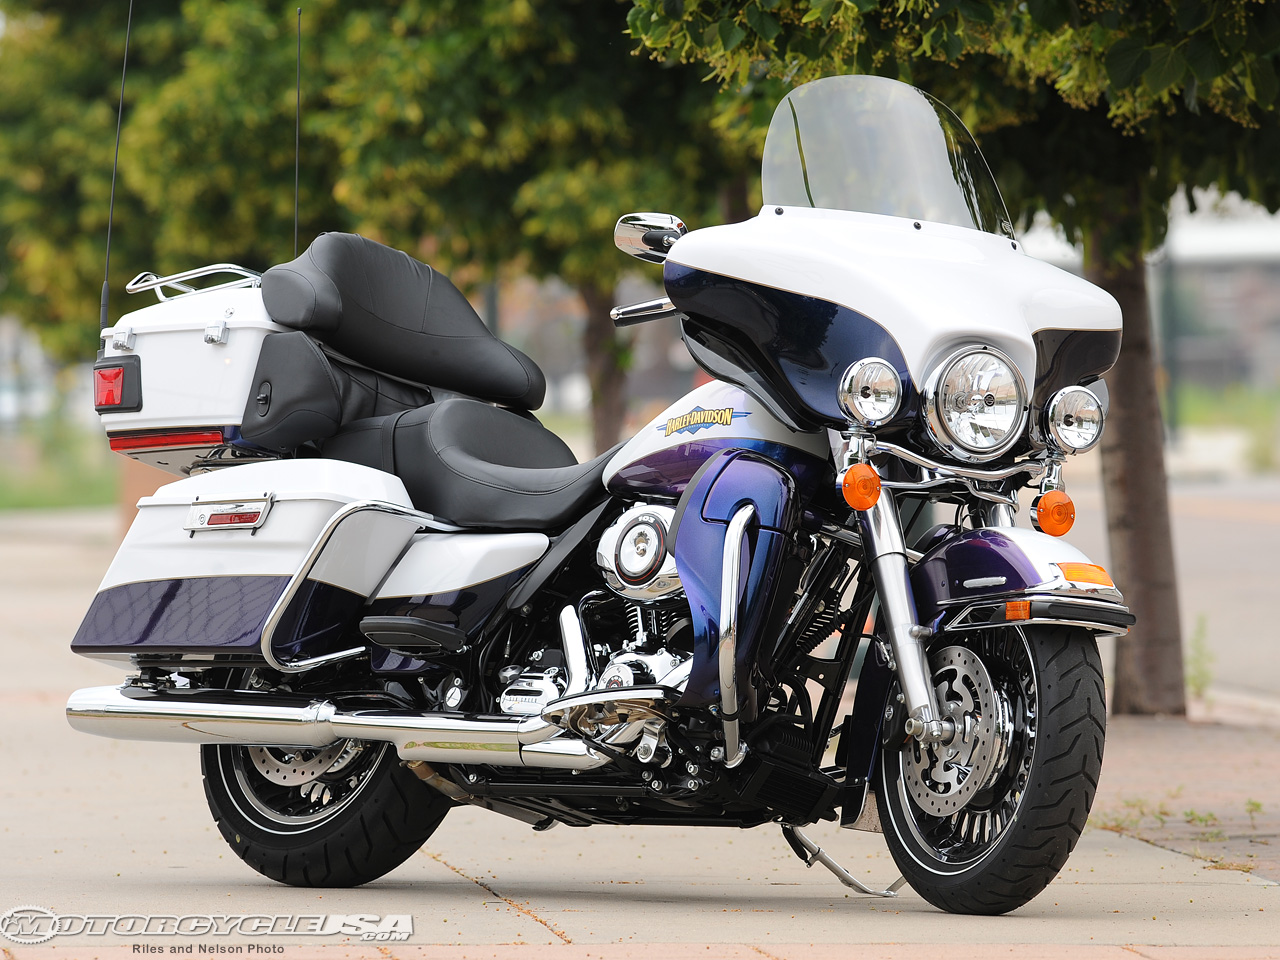 Мотоцикл harley davidson flhtkl electra glide ultra limited low 2015 фото, характеристики, обзор, сравнение на базамото